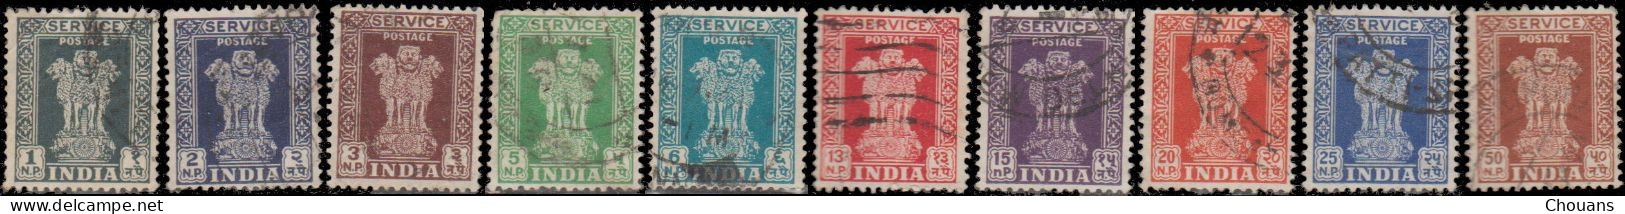 Inde Service 1957/58 - S 14 à 22 -  Colonne D'Asoka - Official Stamps